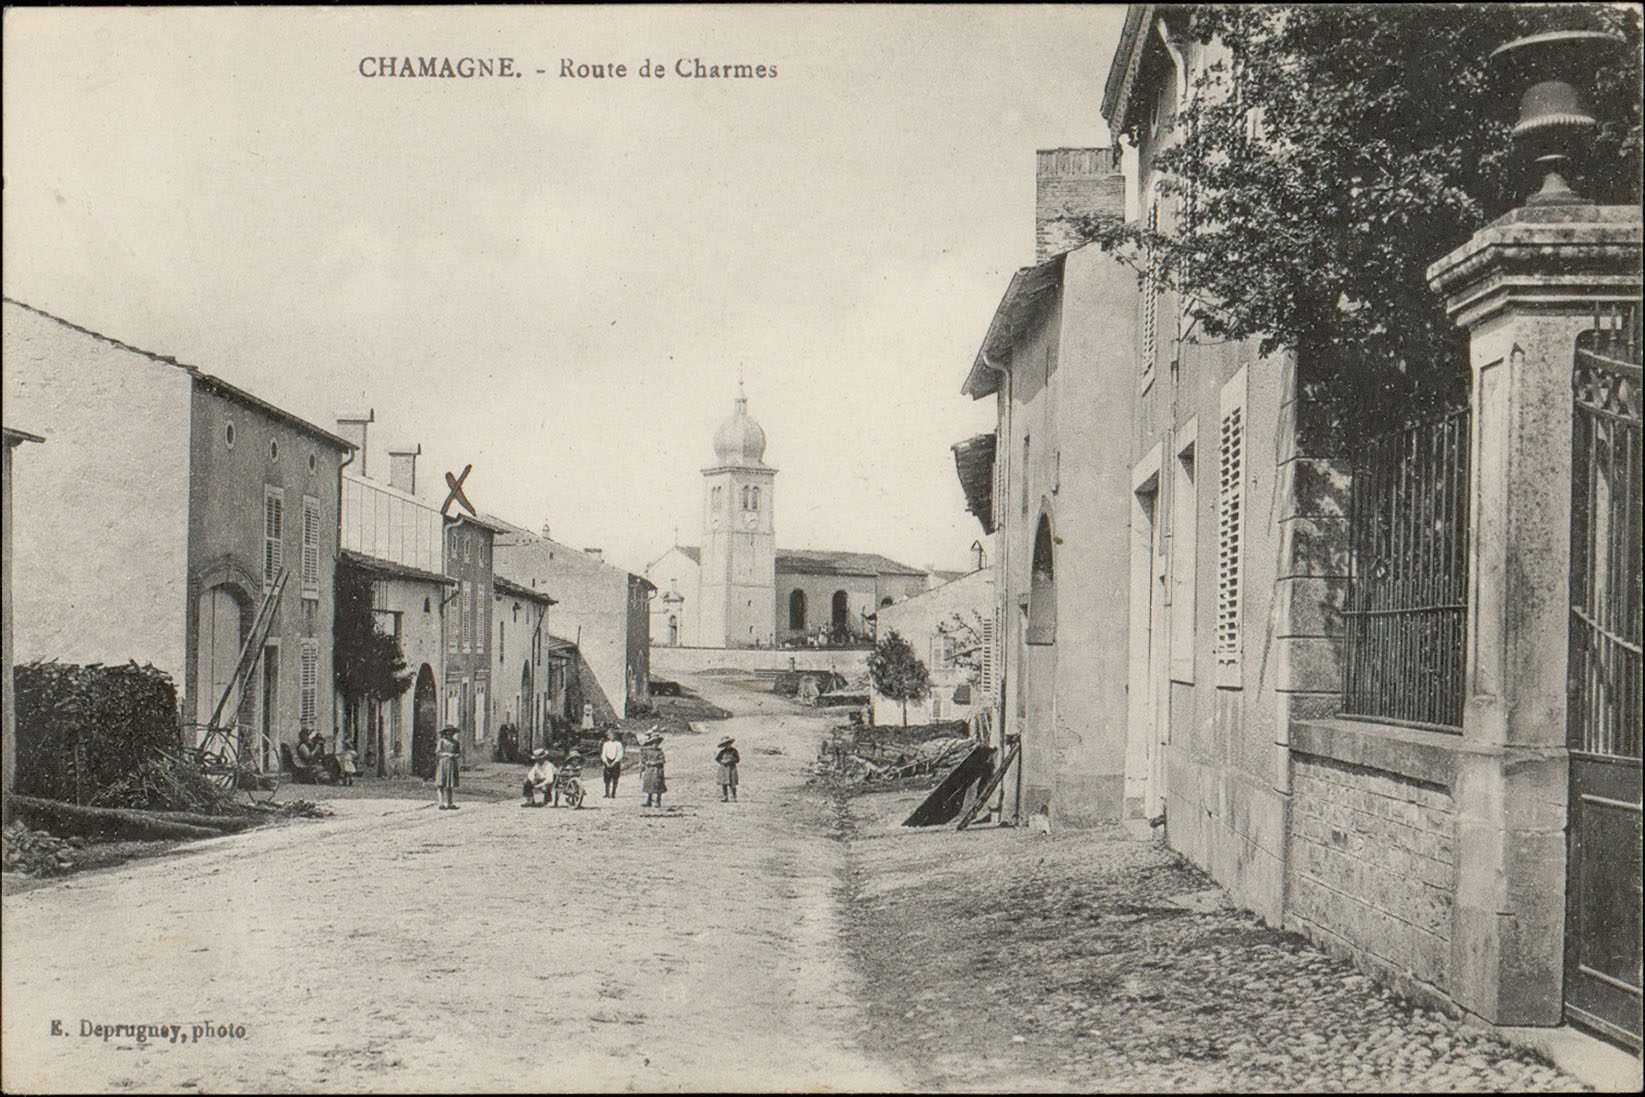 Contenu du Chamagne, Route de Charmes